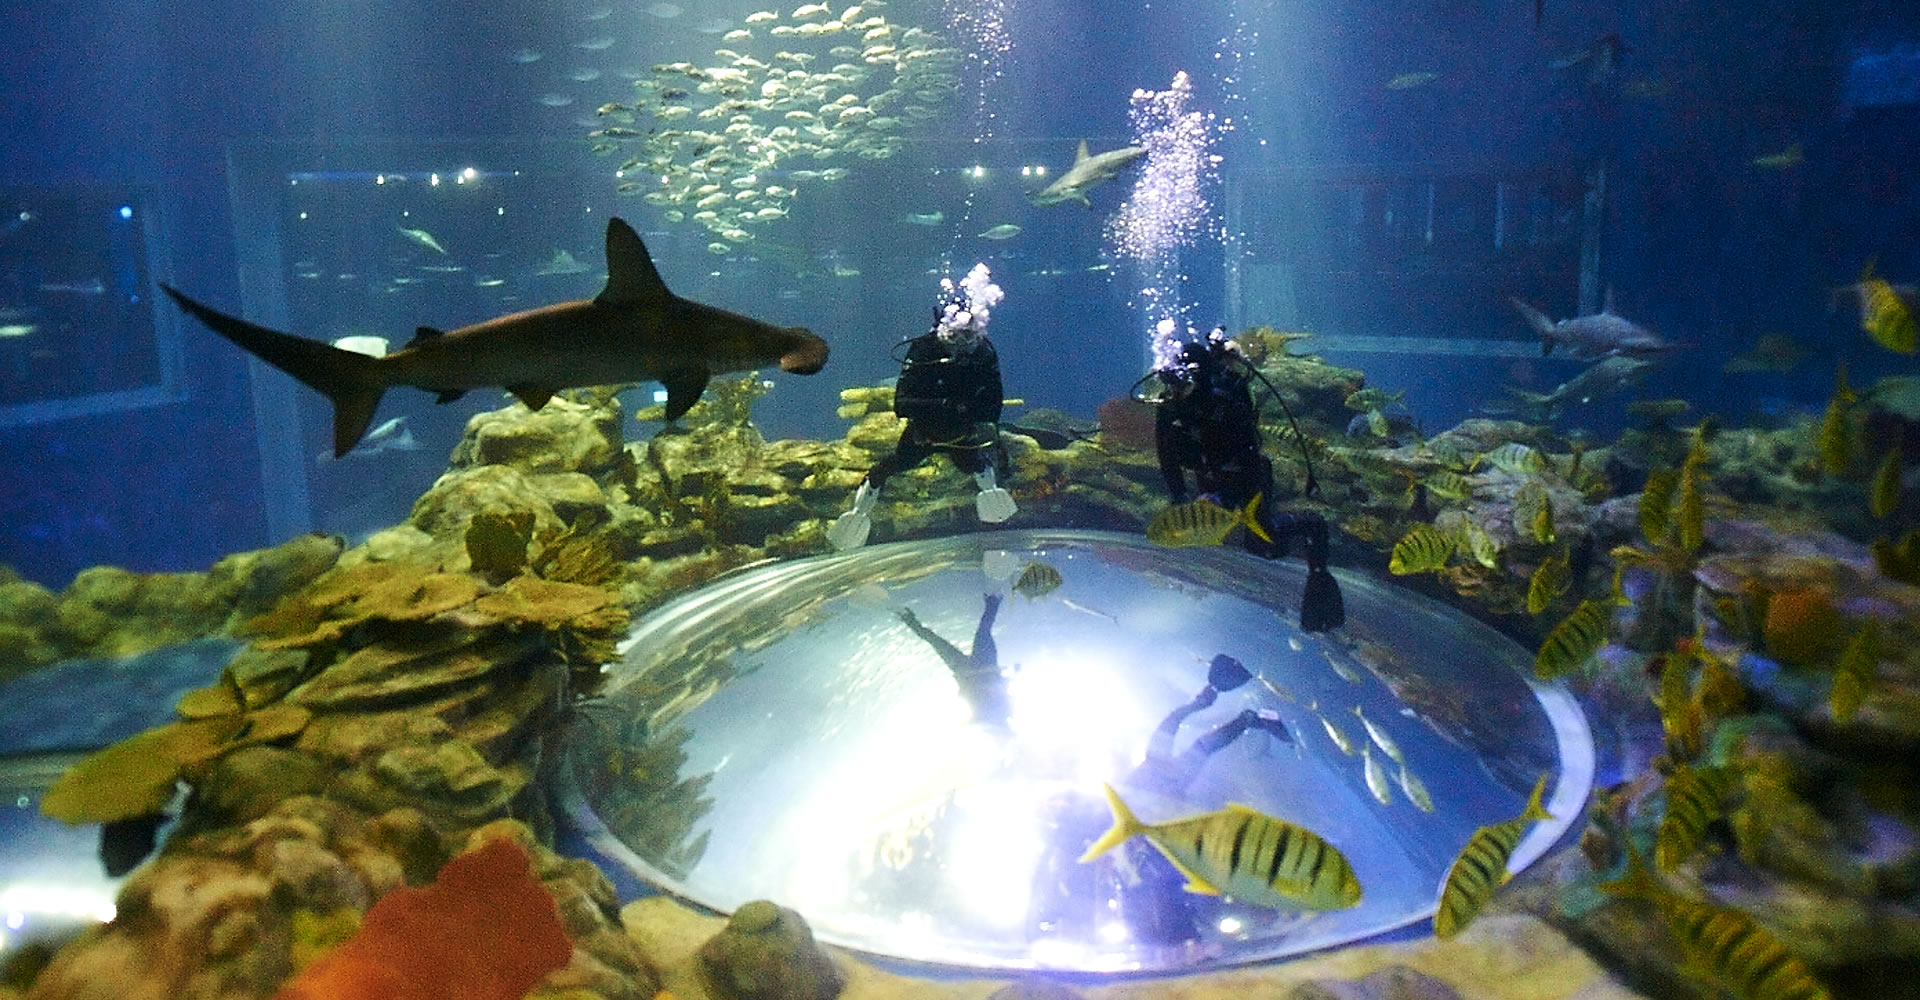 Москва аквариум на вднх фото